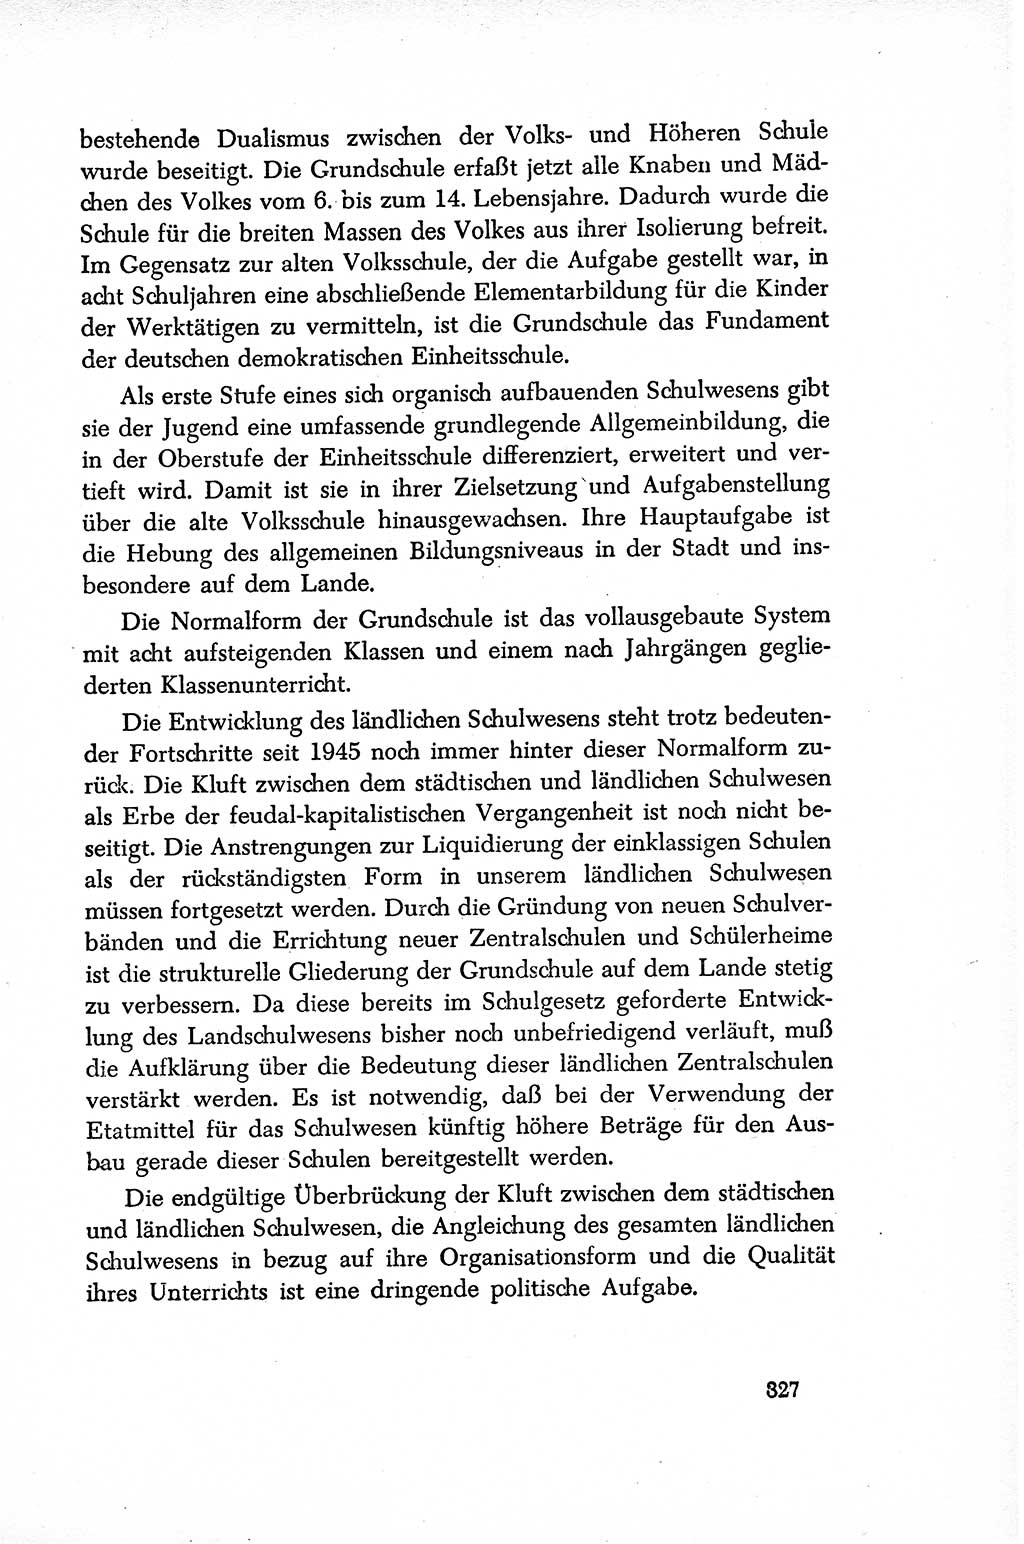 Dokumente der Sozialistischen Einheitspartei Deutschlands (SED) [Sowjetische Besatzungszone (SBZ) Deutschlands/Deutsche Demokratische Republik (DDR)] 1948-1950, Seite 327 (Dok. SED SBZ Dtl. DDR 1948-1950, S. 327)